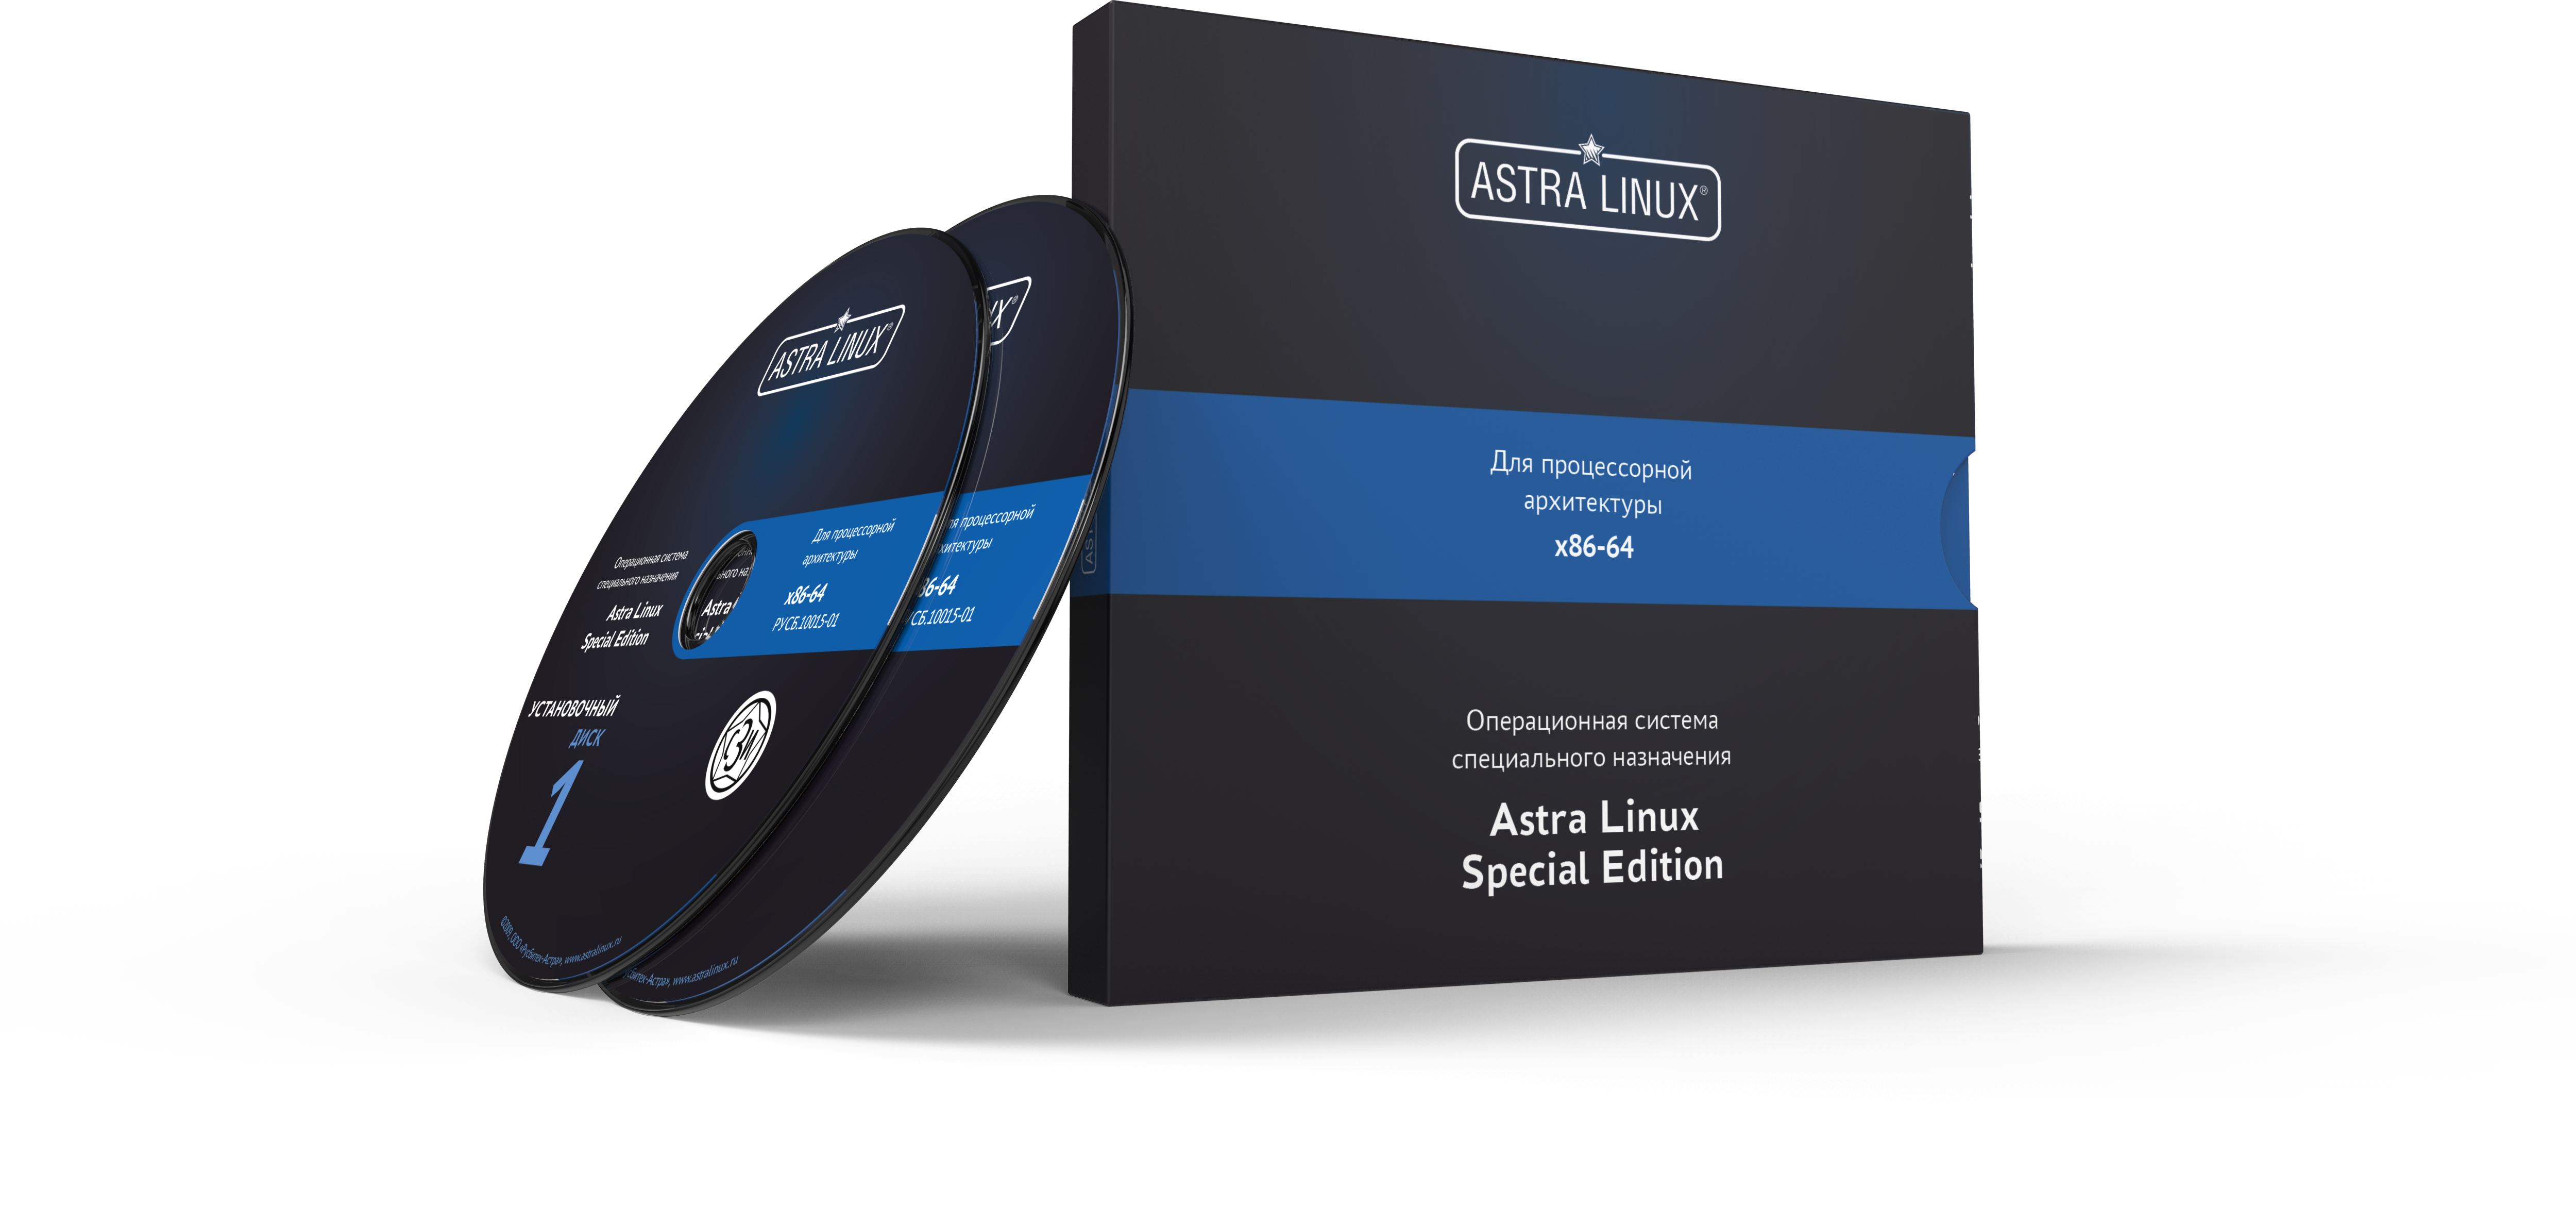 Astra Linux Special Edition 1.7 - Воронеж, РУСБ.10015-01 (ФСТЭК), электронный, без огр. срока, ТП "Привилегированная" 24 мес.